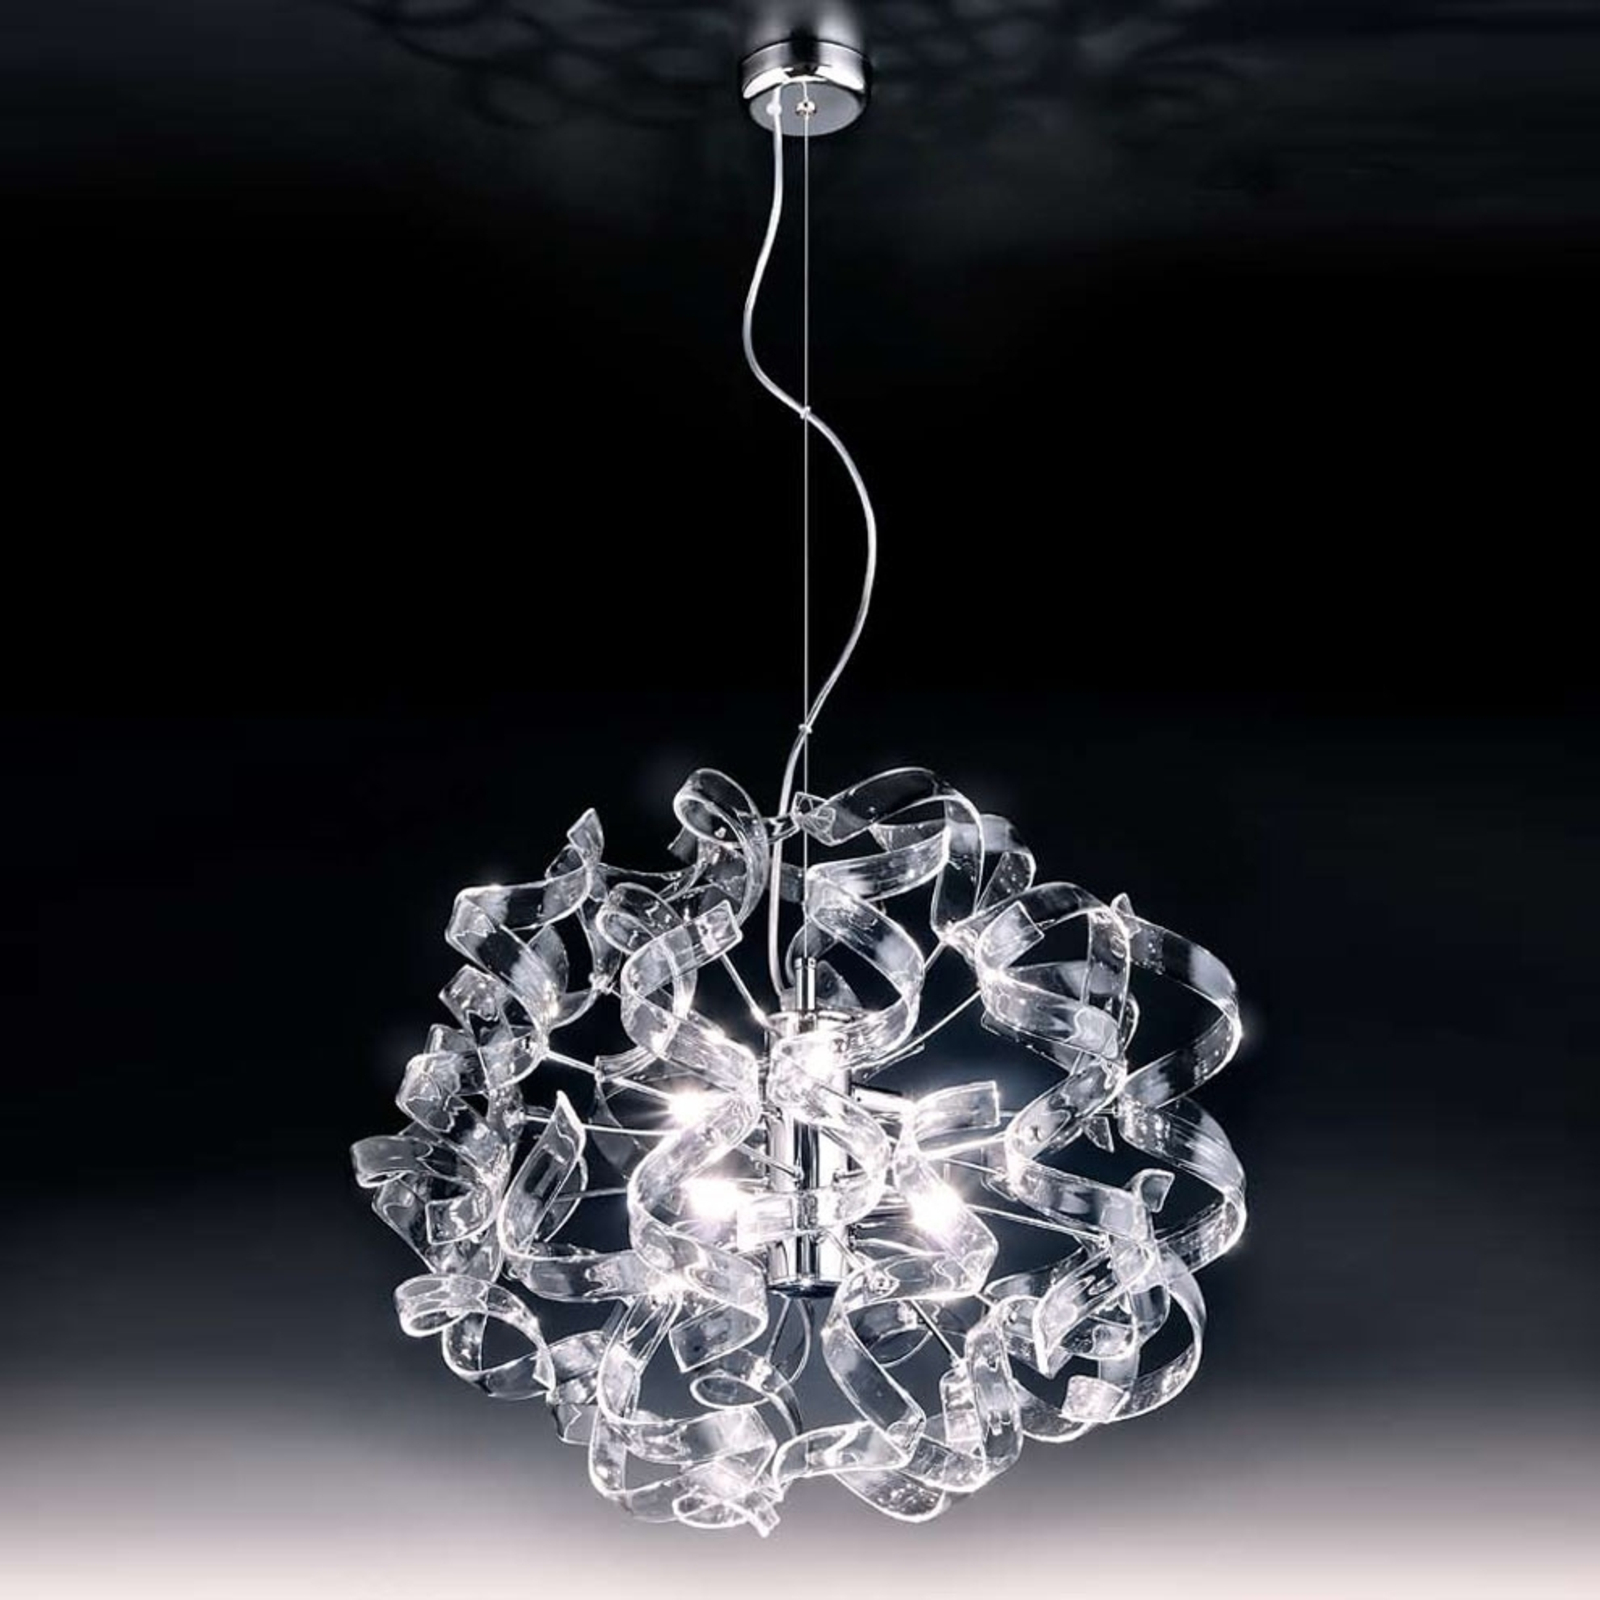 Glanzende hanglamp Crystal, ovaal